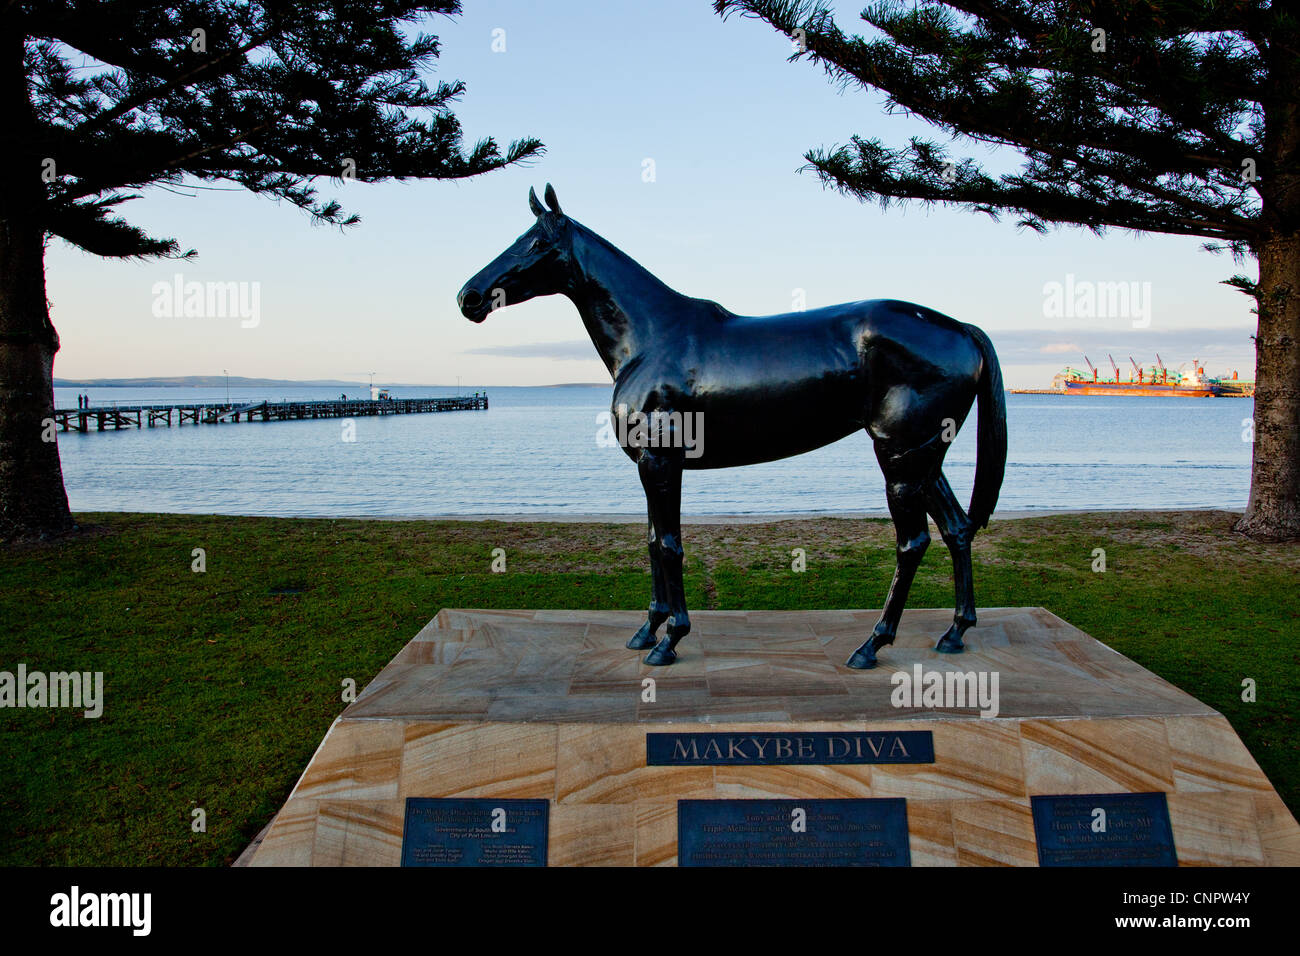 Estatua de caballo de carreras Makybe Diva Foto de stock